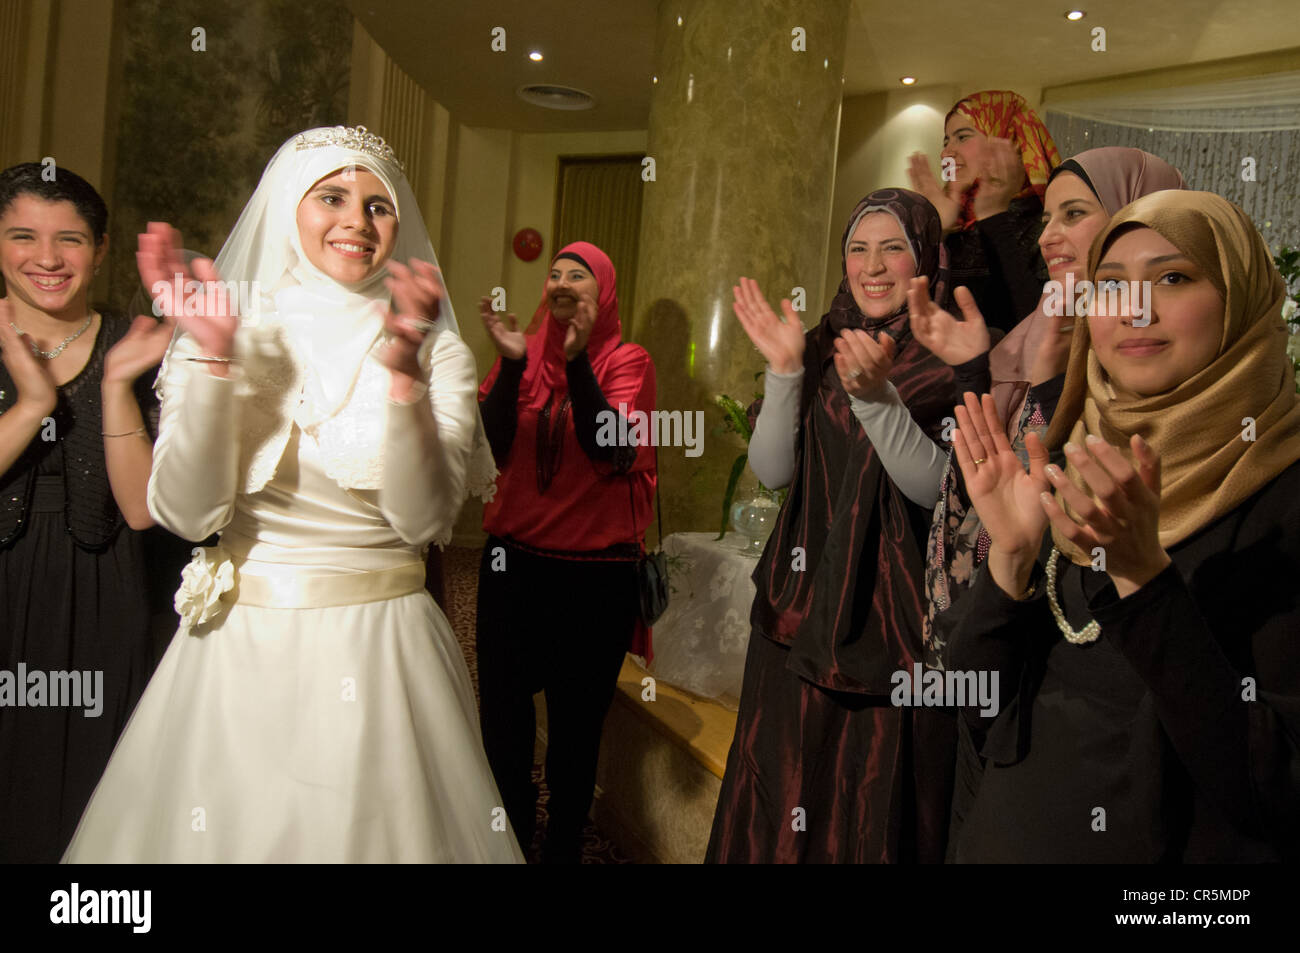 Egypt marriage Banque de photographies et d'images à haute résolution -  Alamy